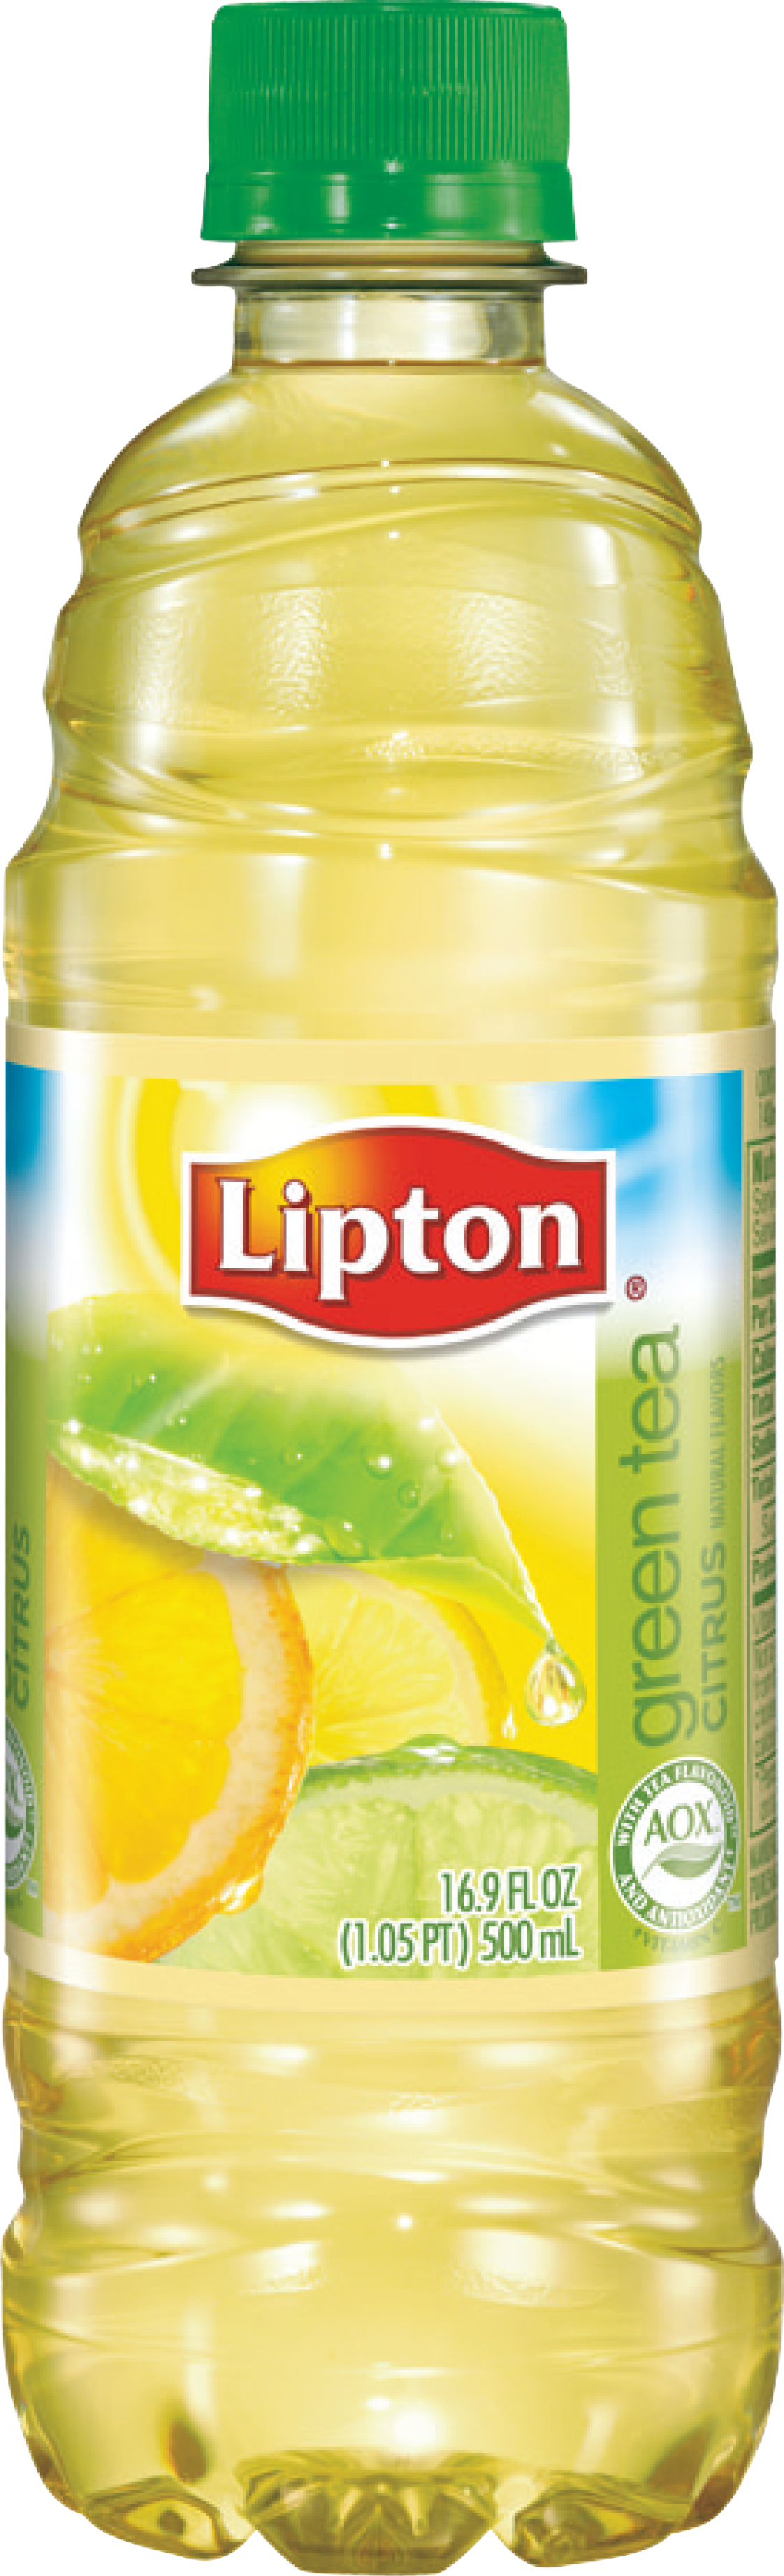 Белый липтон. Холодный чай Липтон белый. Липтон зелёный холодный чай. Lipton зеленый чай холодный. Липтон Грин холодный чай.